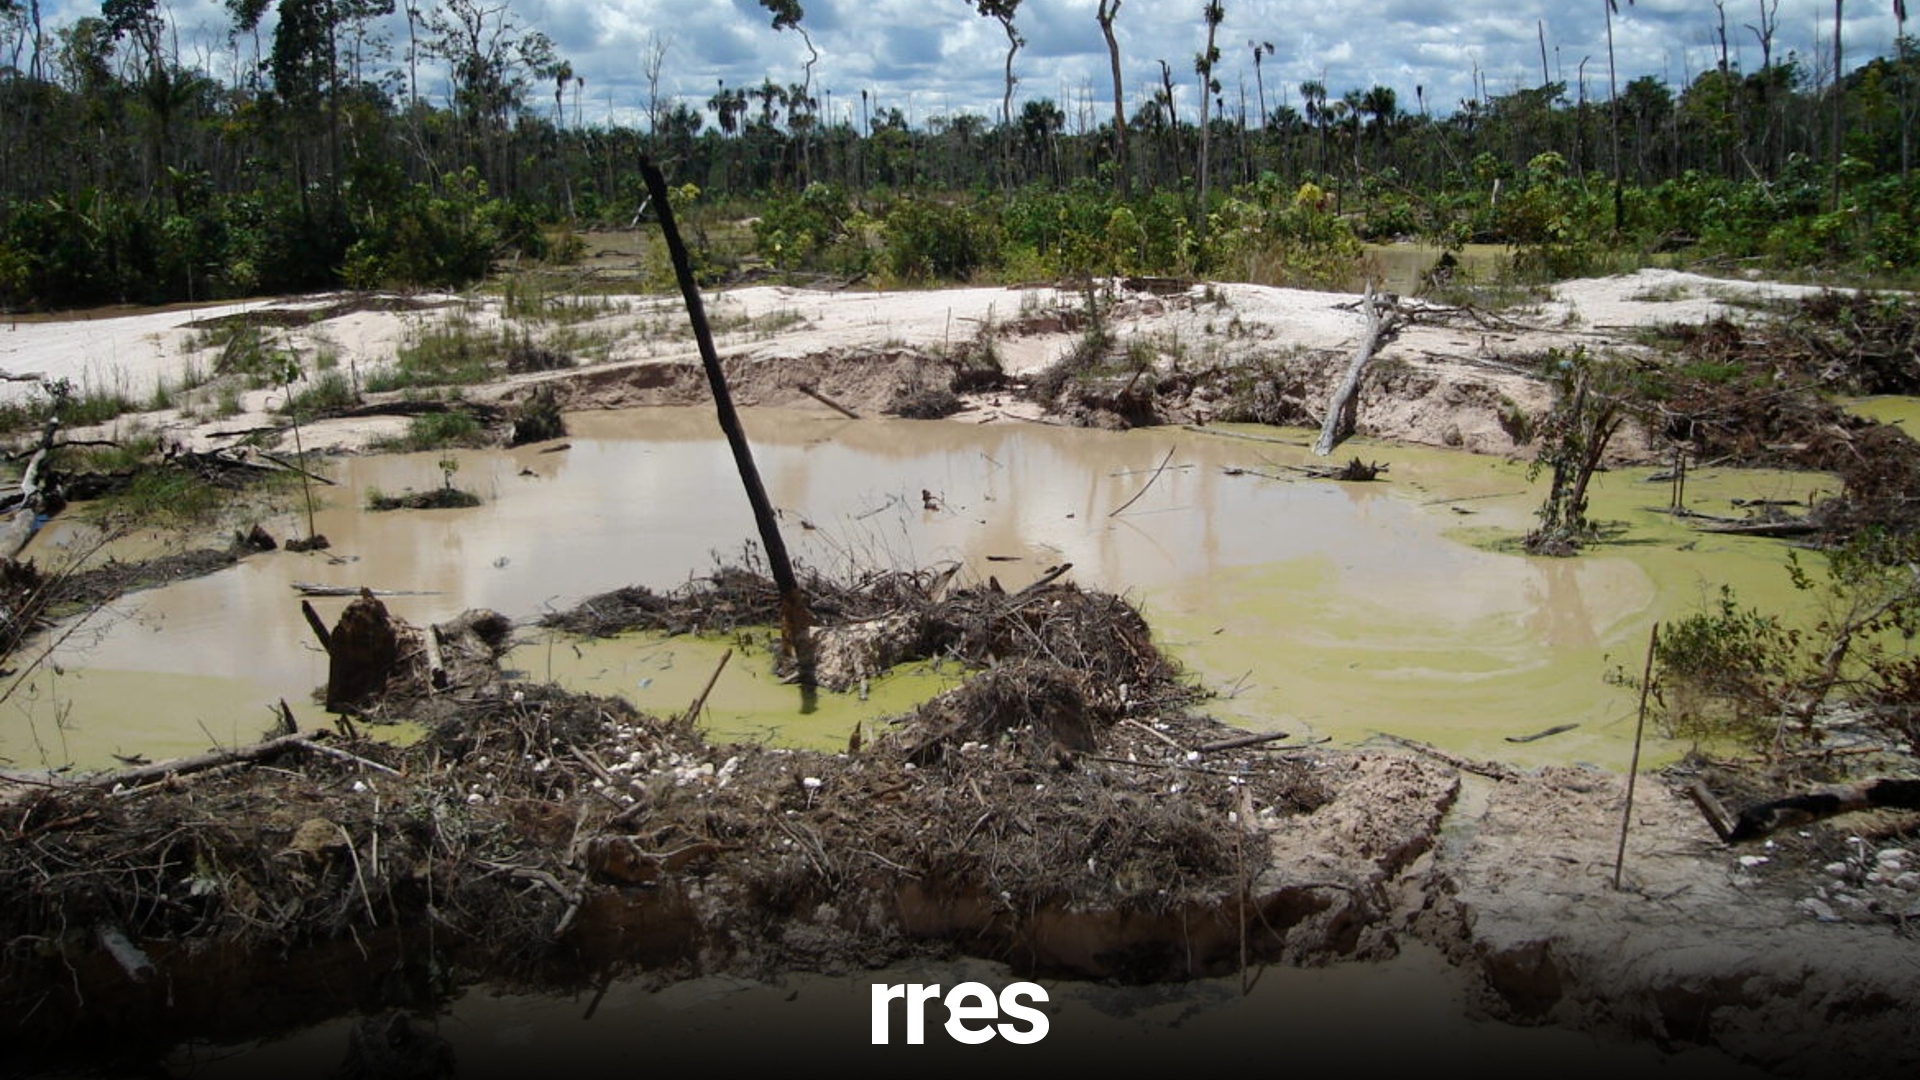 Violencia y minería ilegal se recrudecen en Amazonas tras operativo militar en el Yapacana